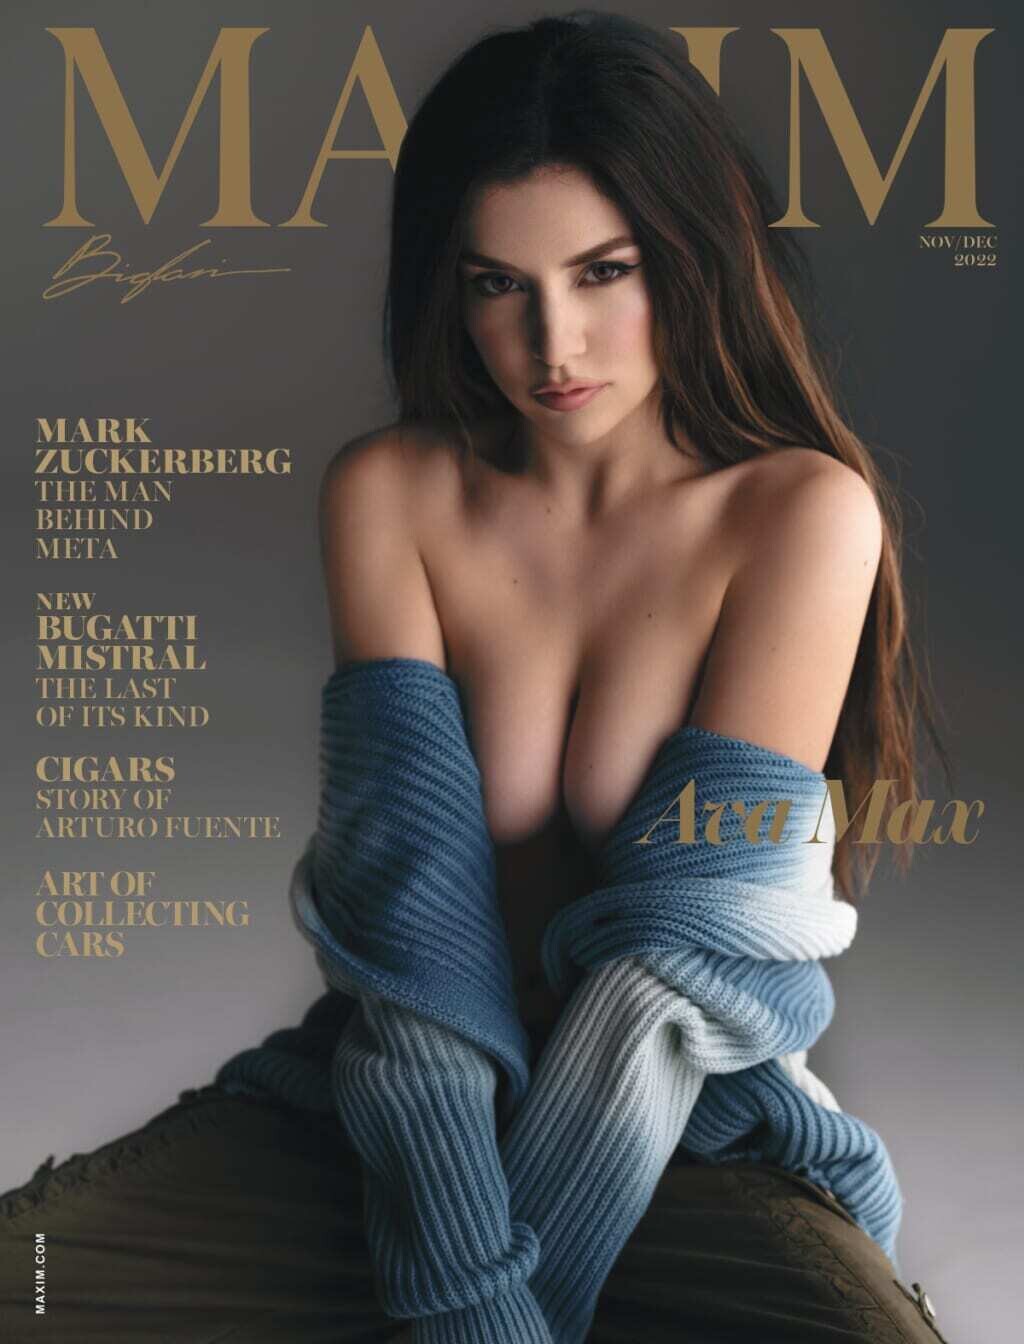 Maxim Magazine Nov/Dec 2022: Ava Max